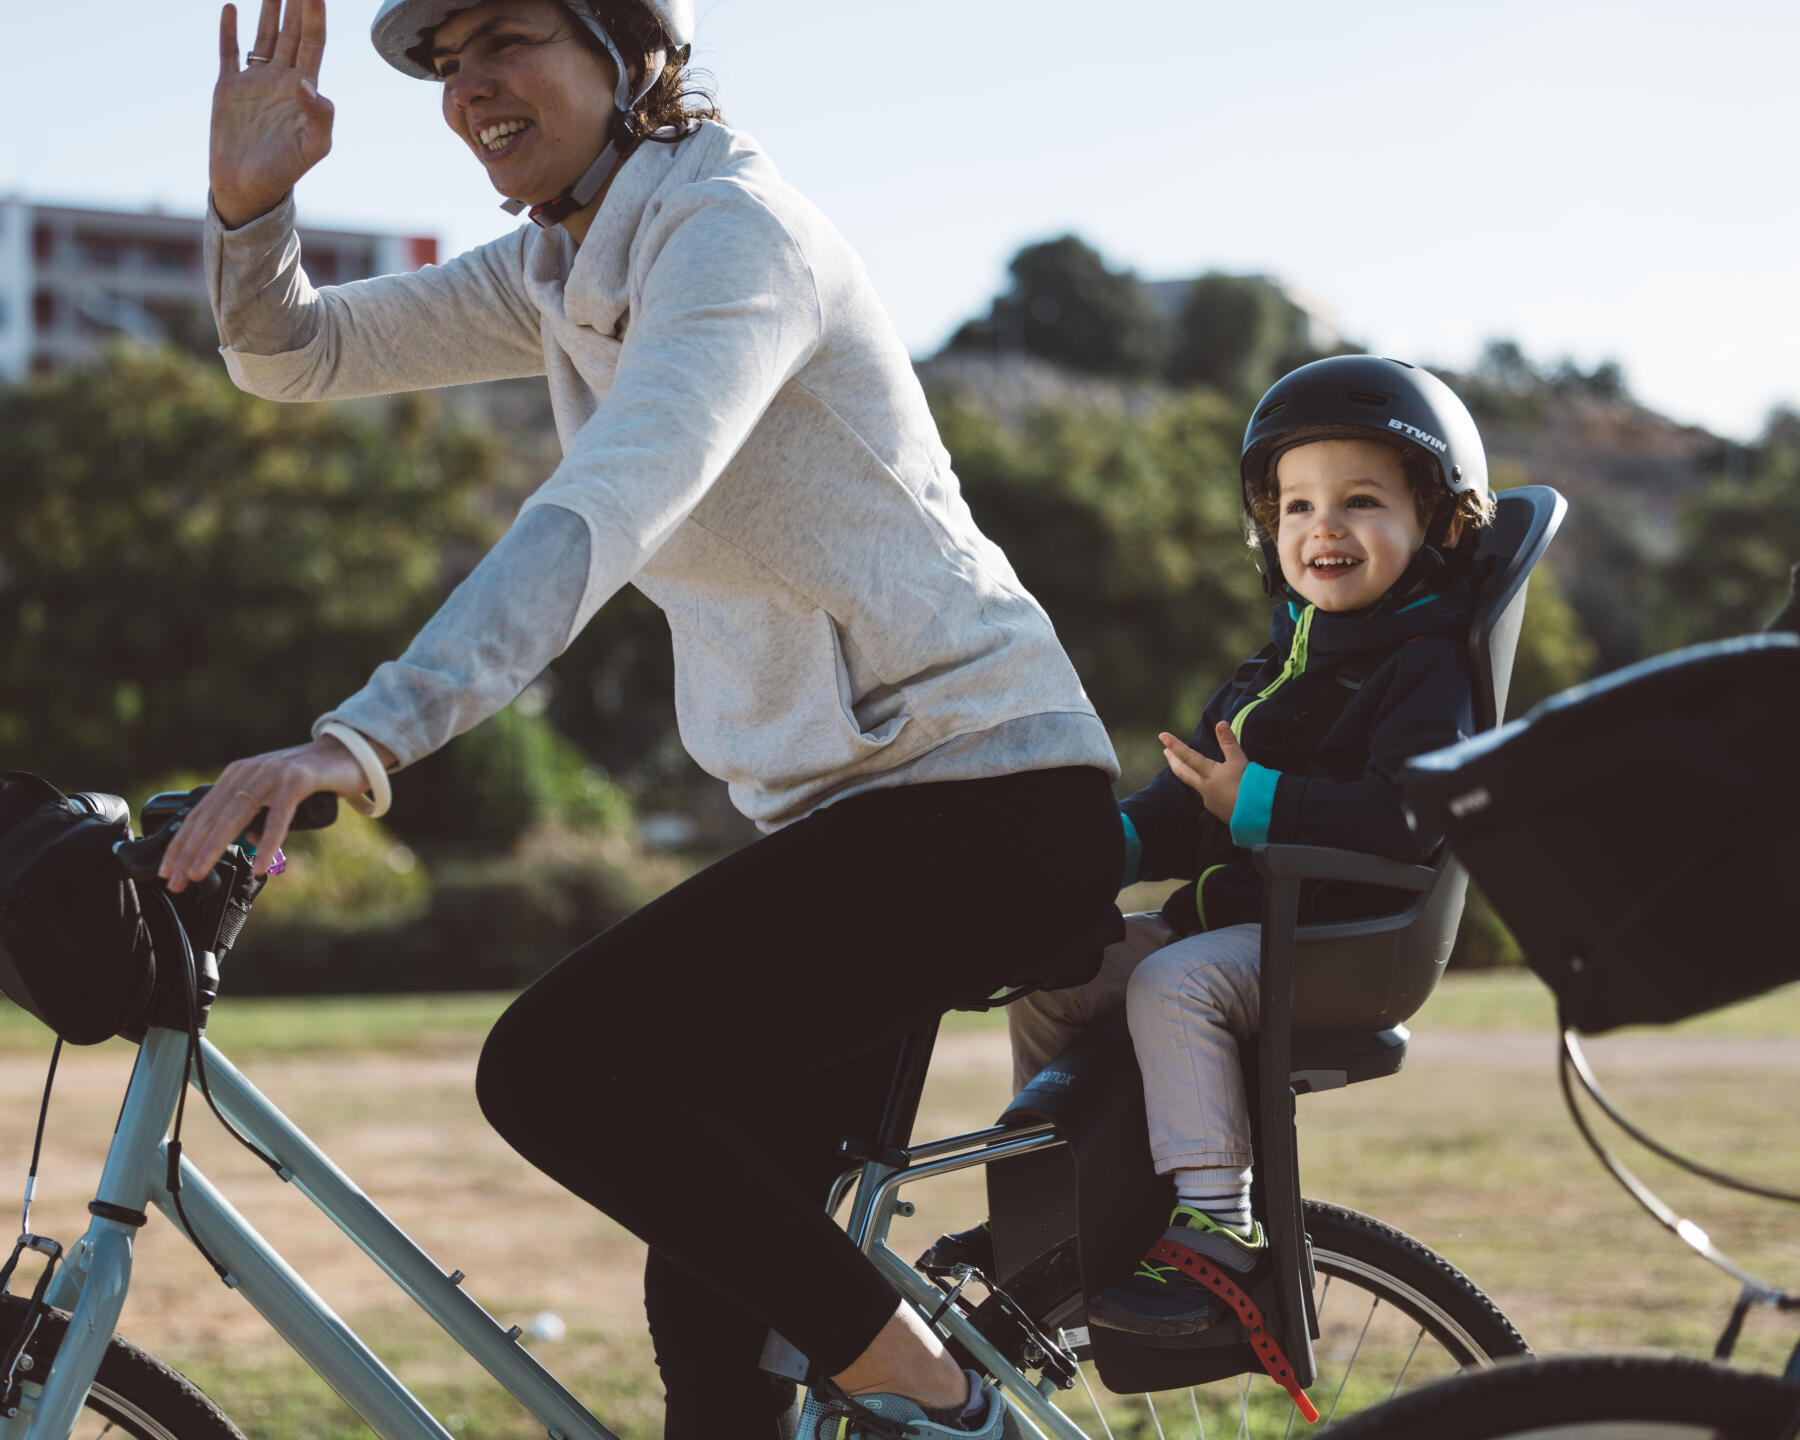 Transportar crianças em bicicleta. Que soluções existem?